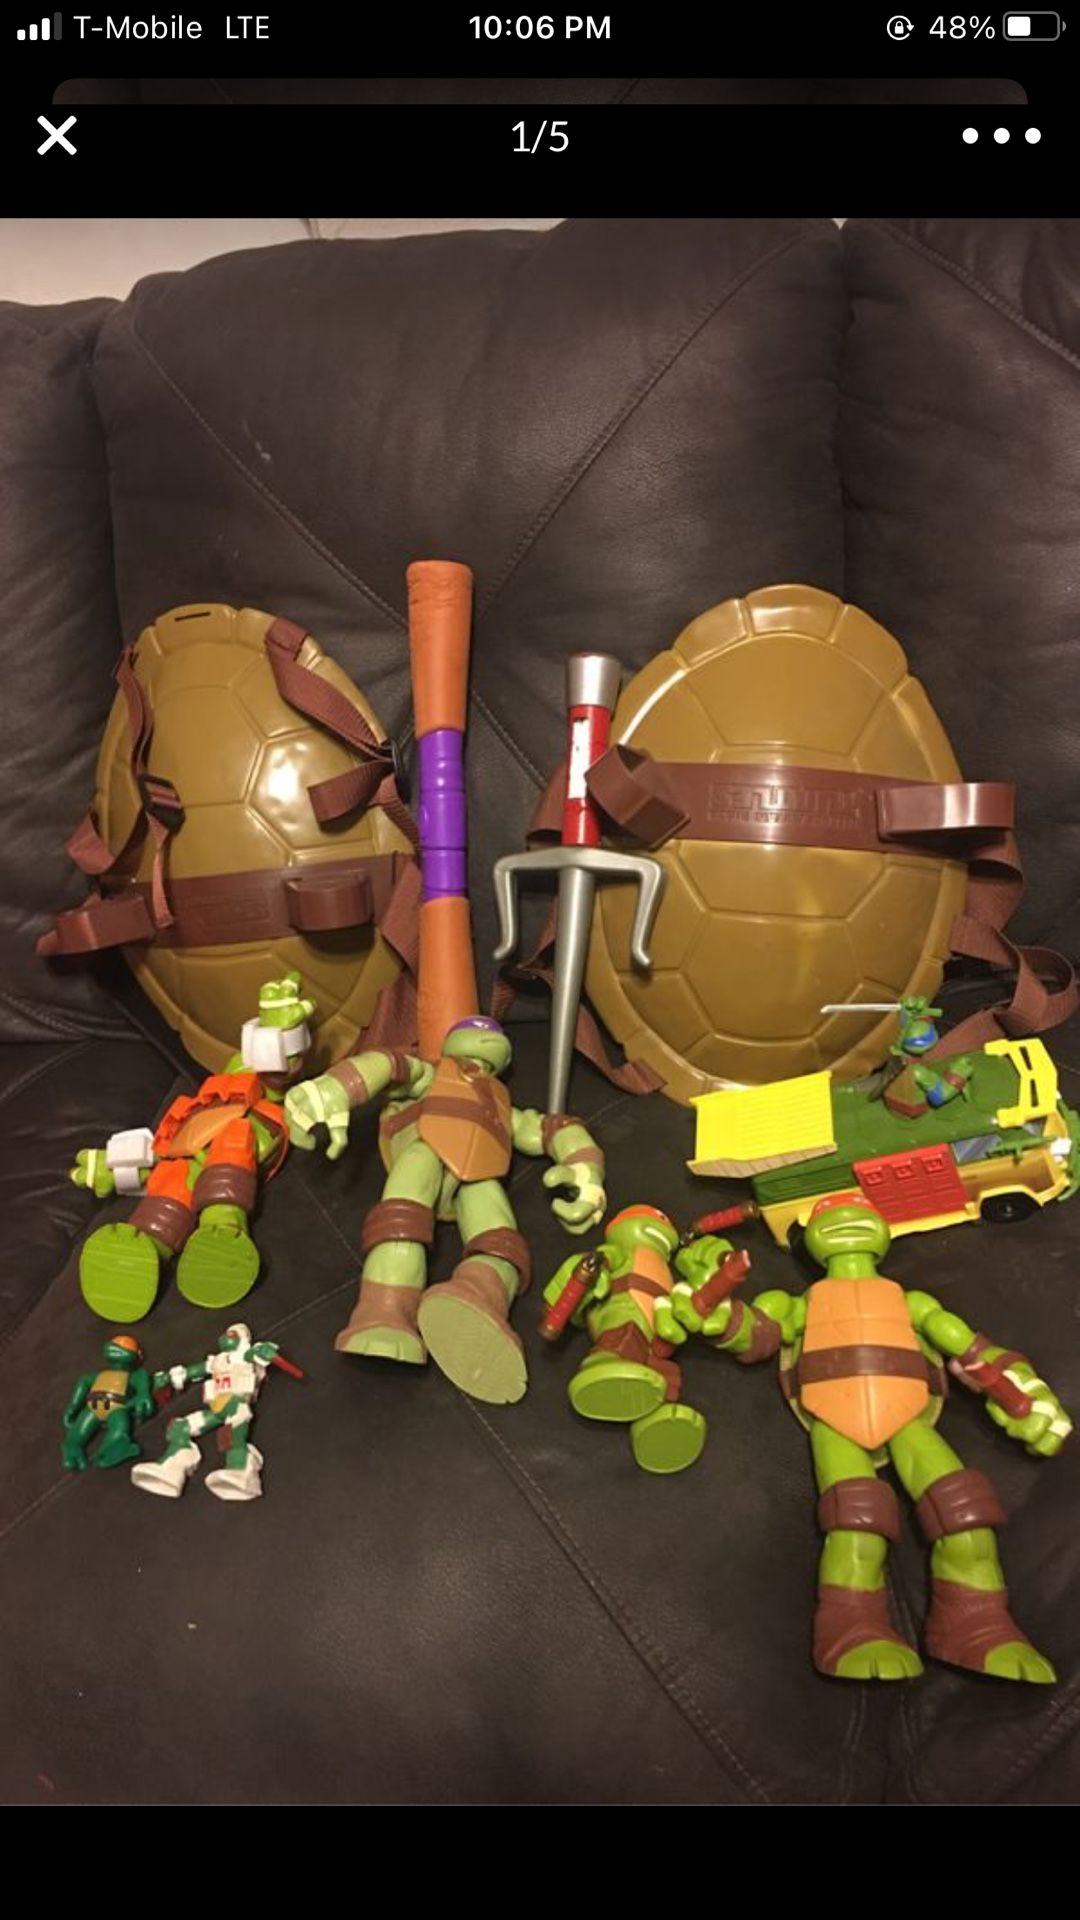 Ninja turtle set